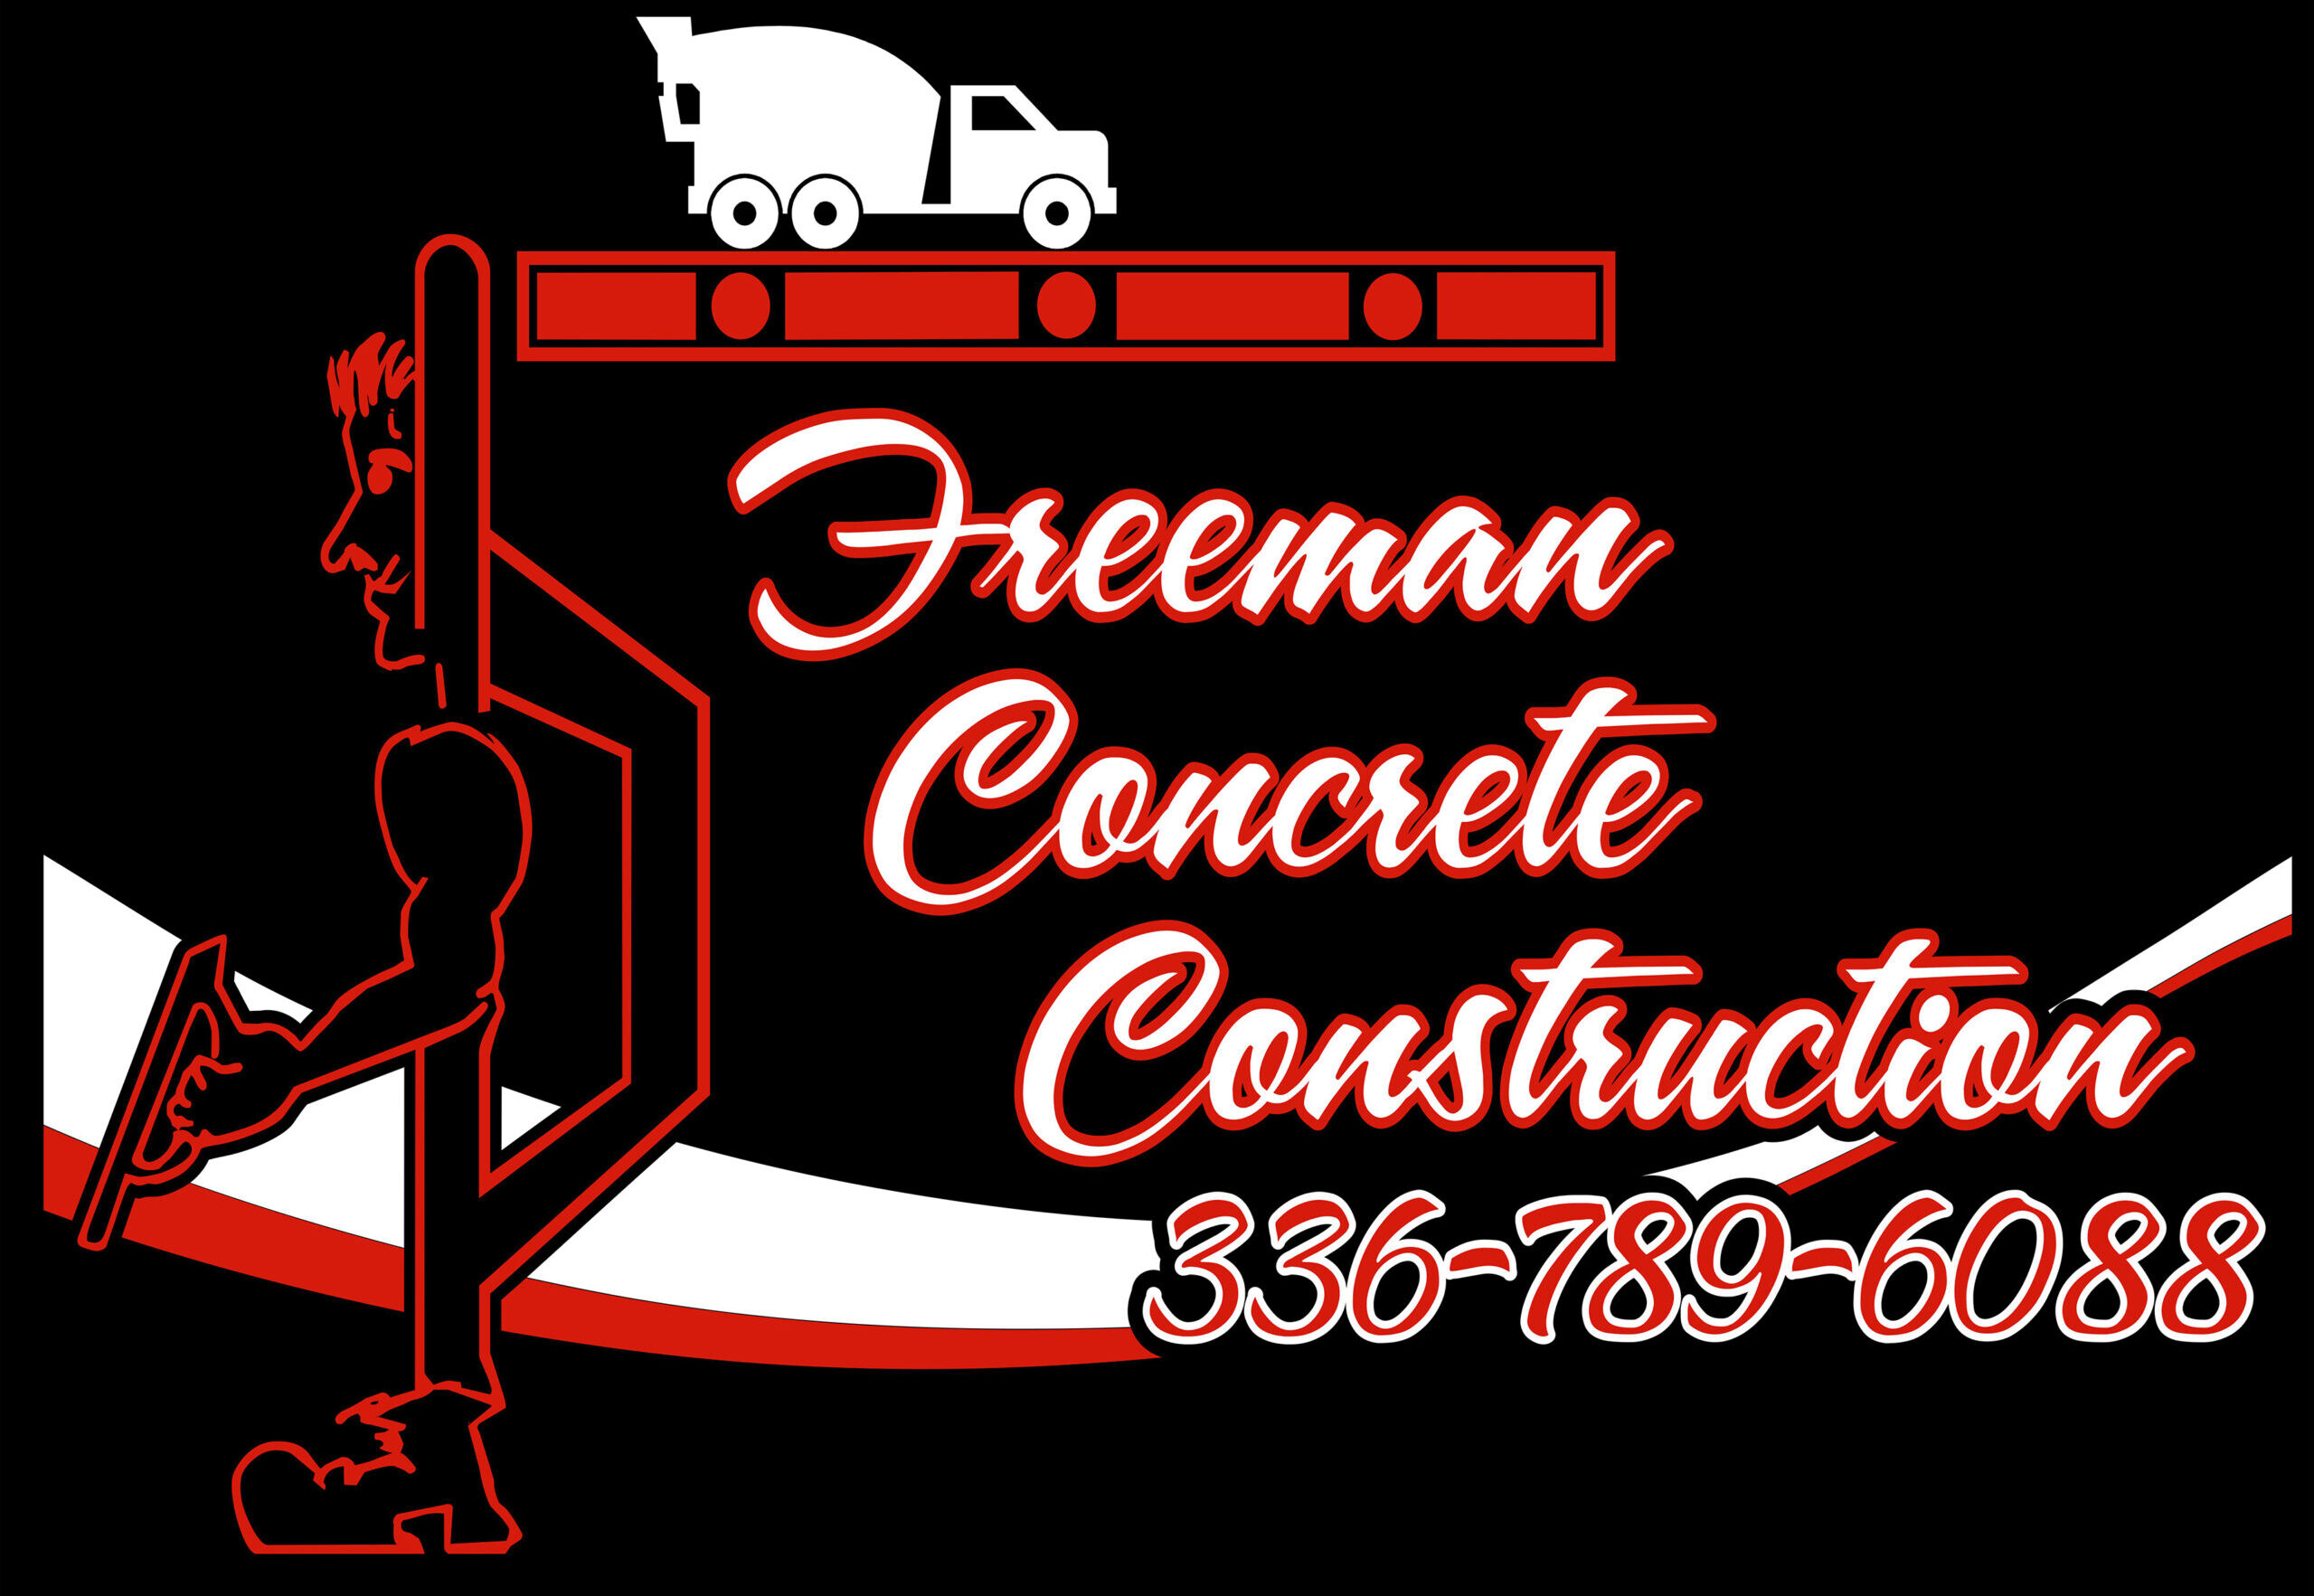 Freeman Concrete